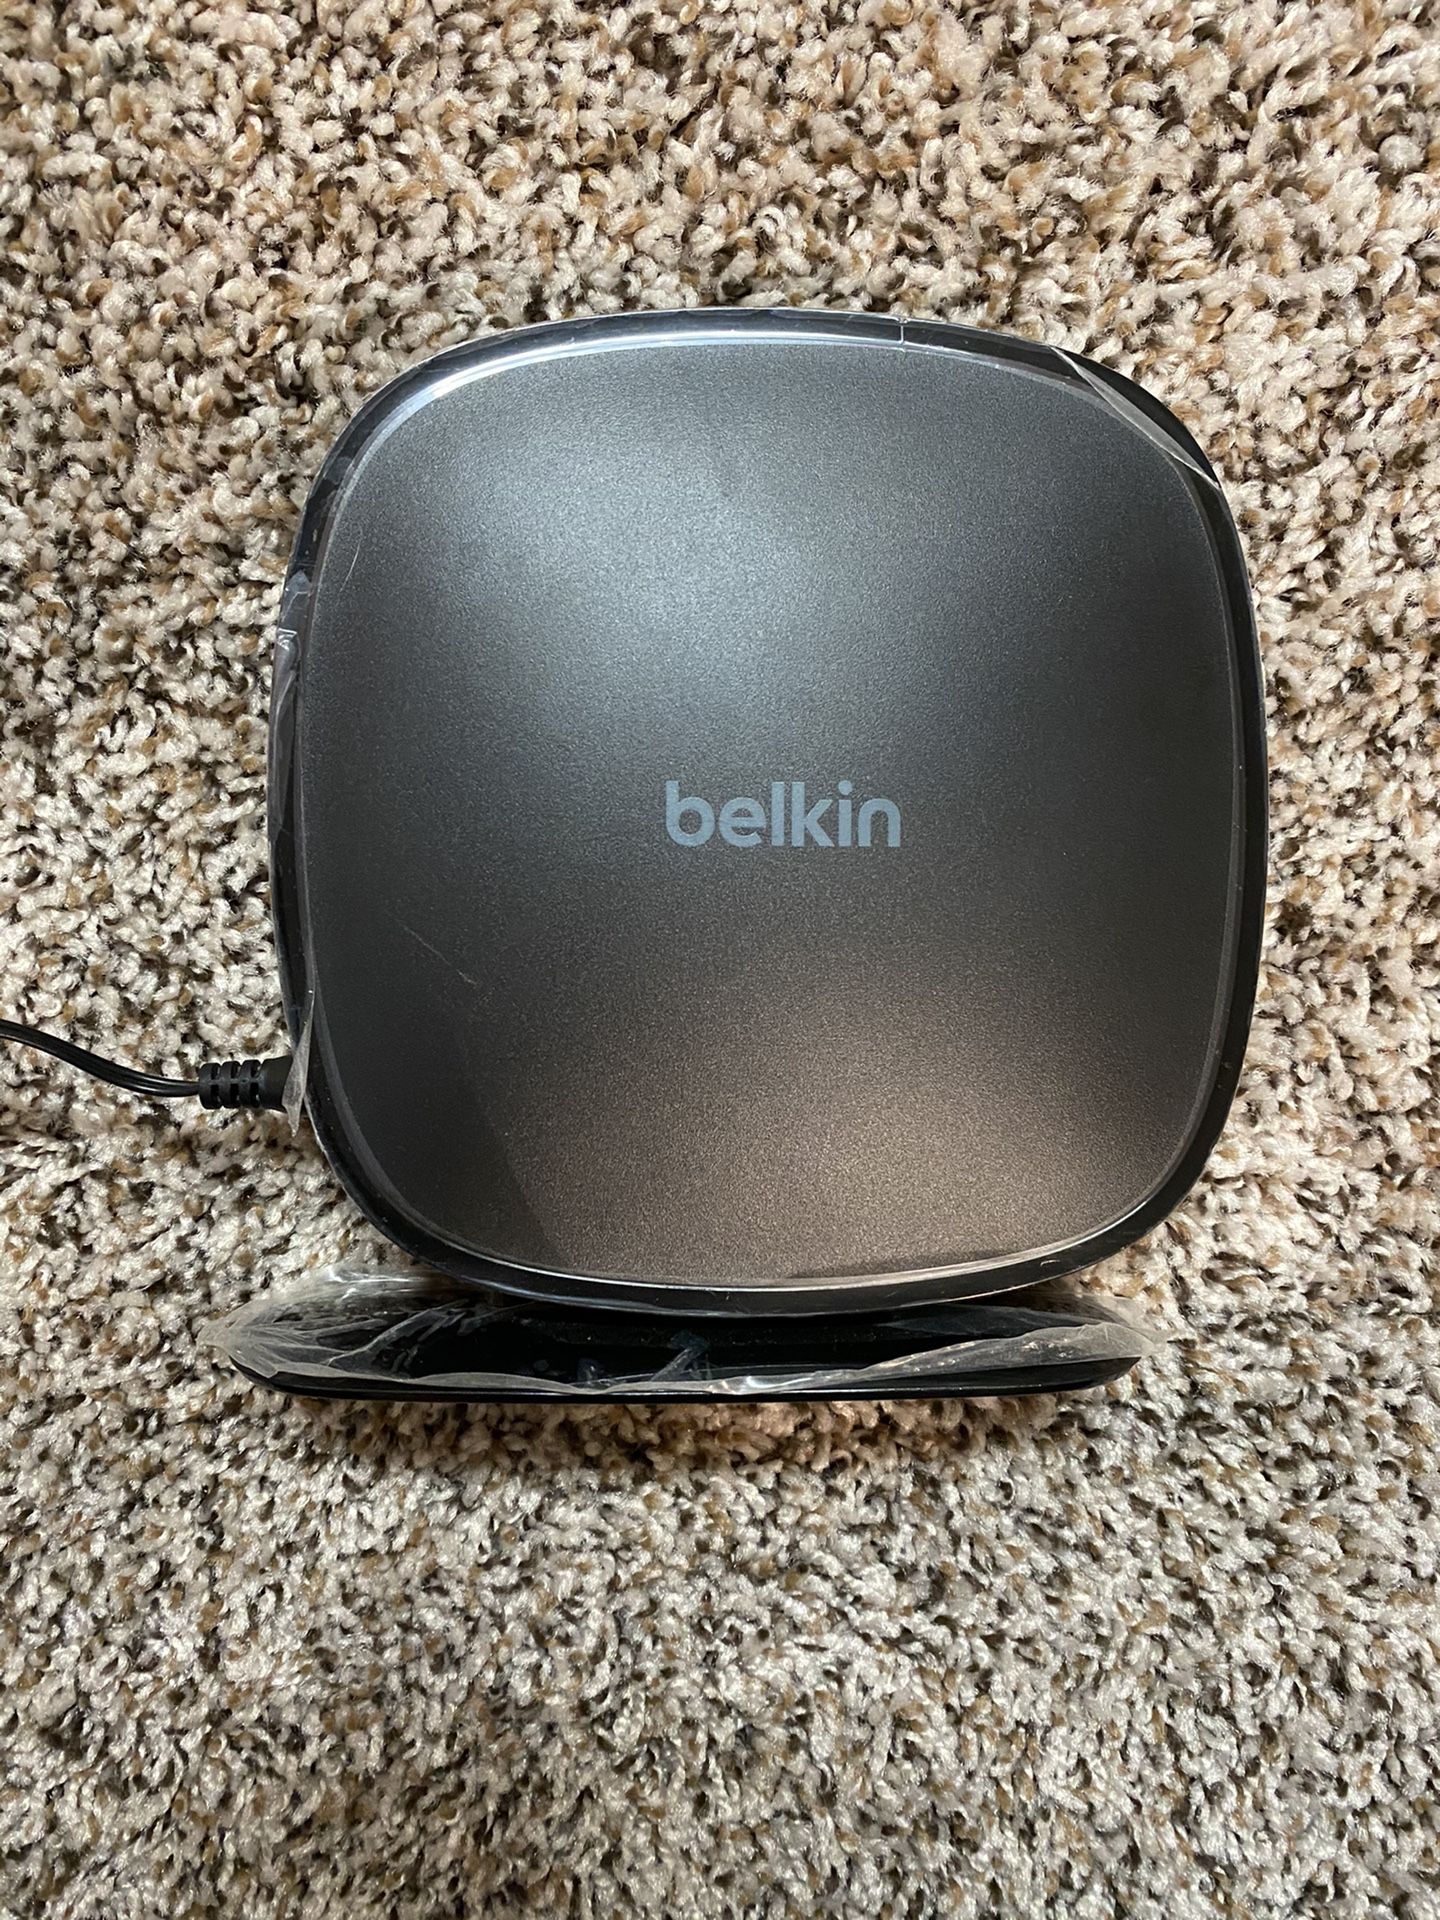 🏠 Belkin Router